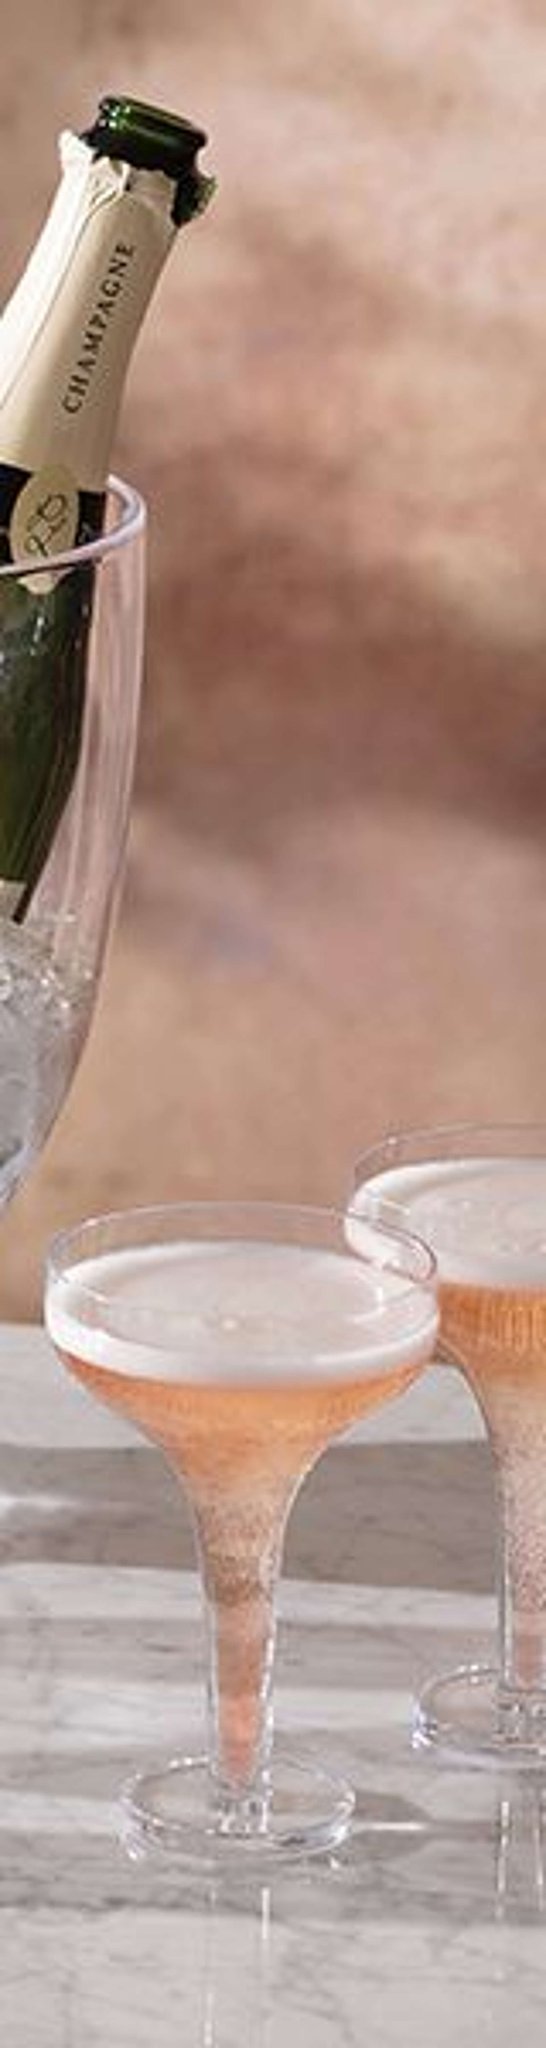 L.S.A. - Epoque Champagne Glas 150 ml Set van 2 Stuks